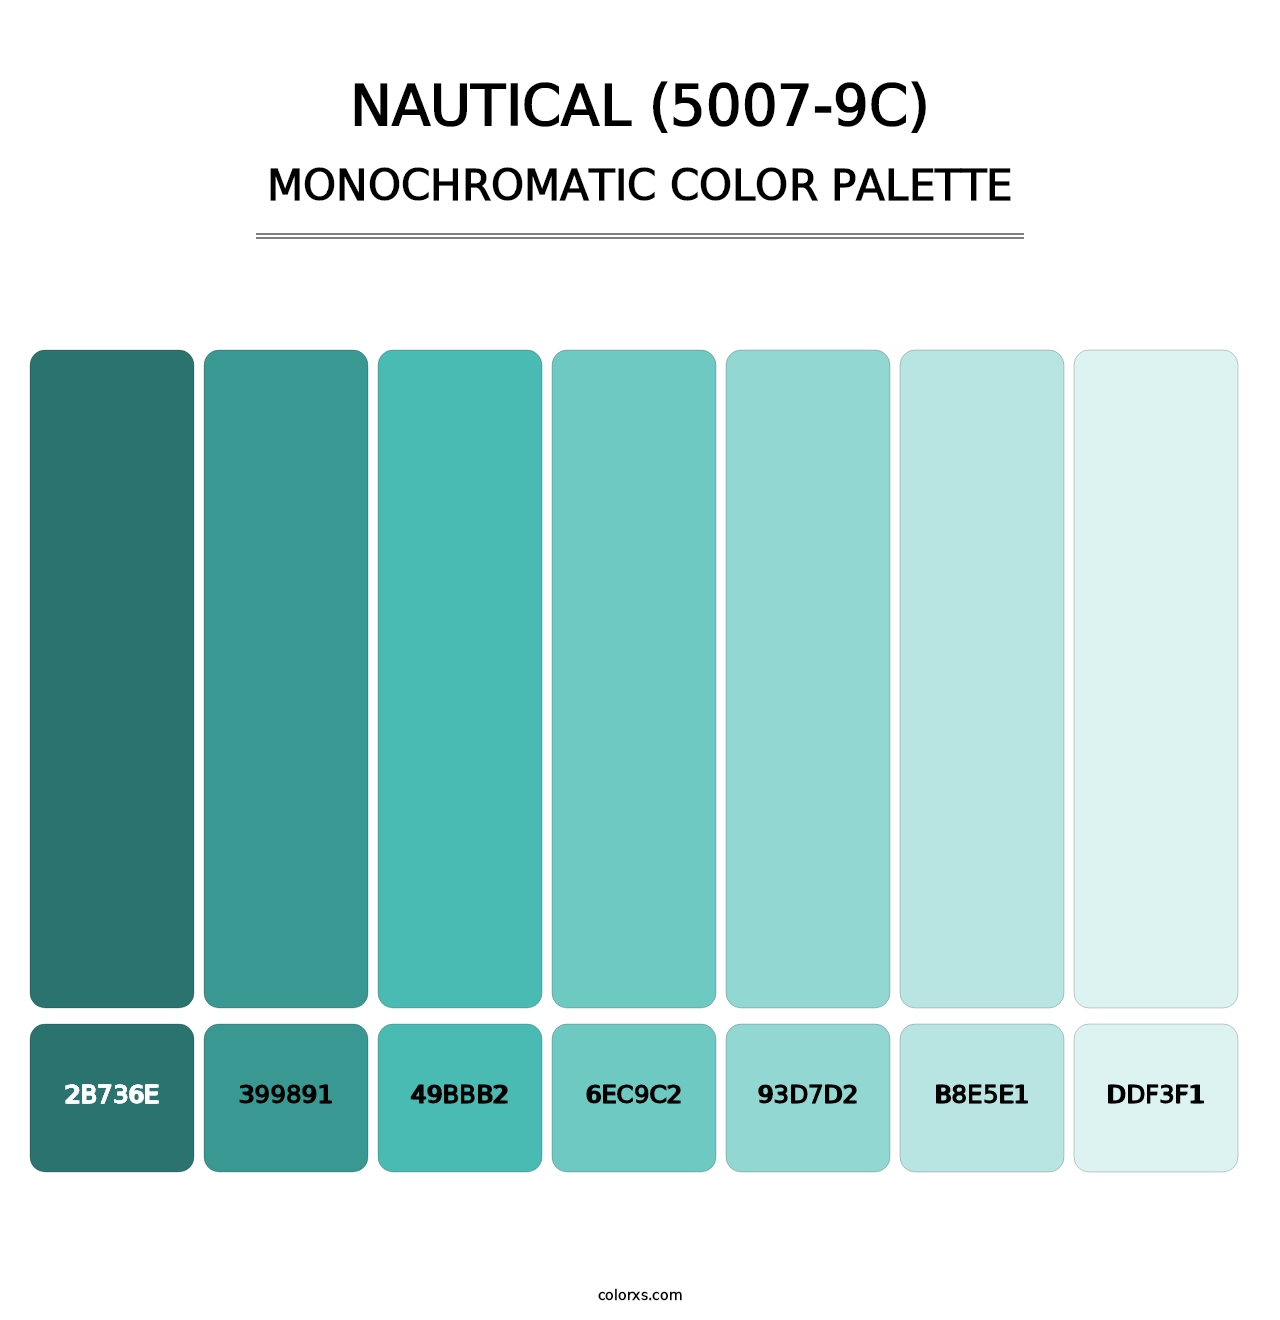 Nautical (5007-9C) - Monochromatic Color Palette